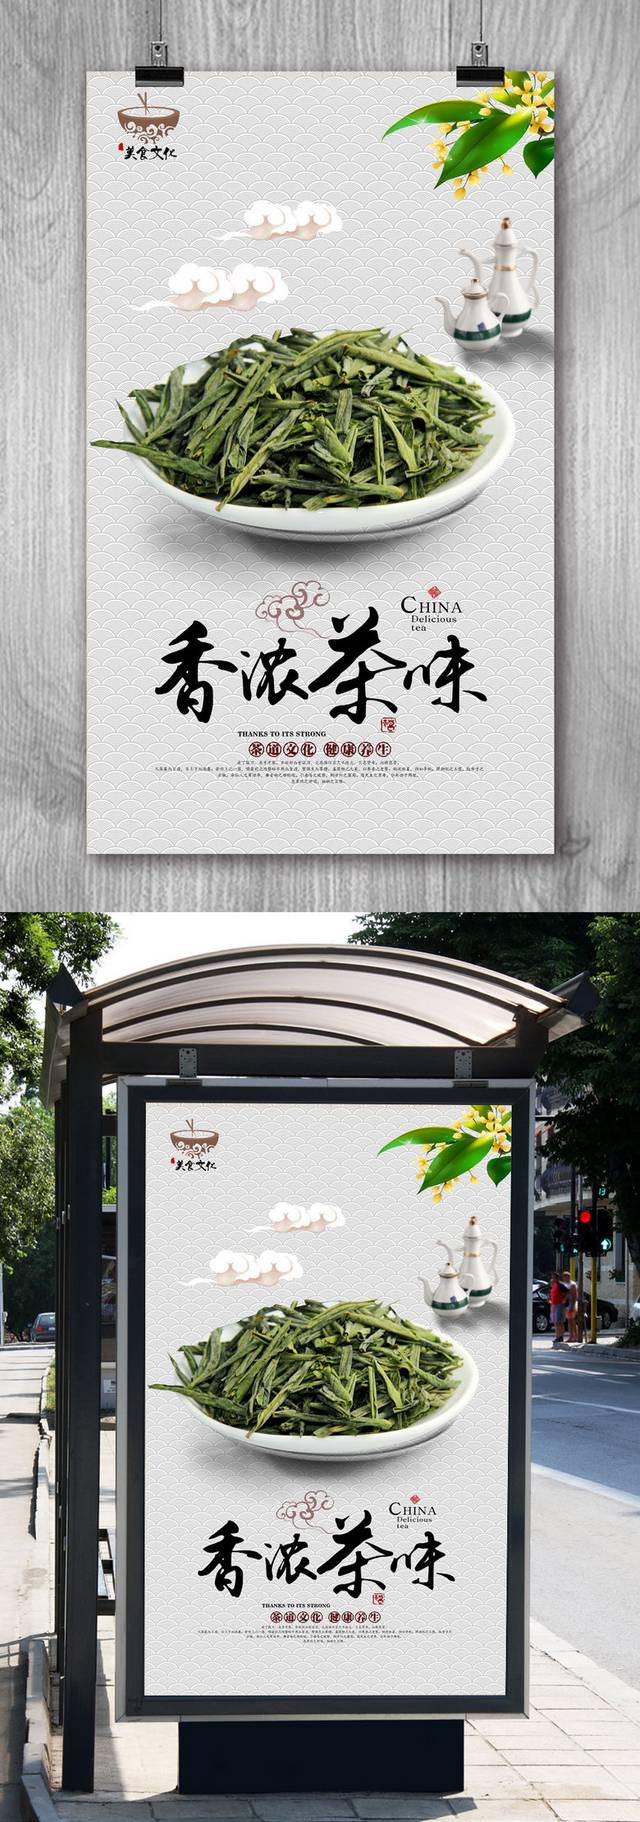 传统茶道文化宣传海报设计